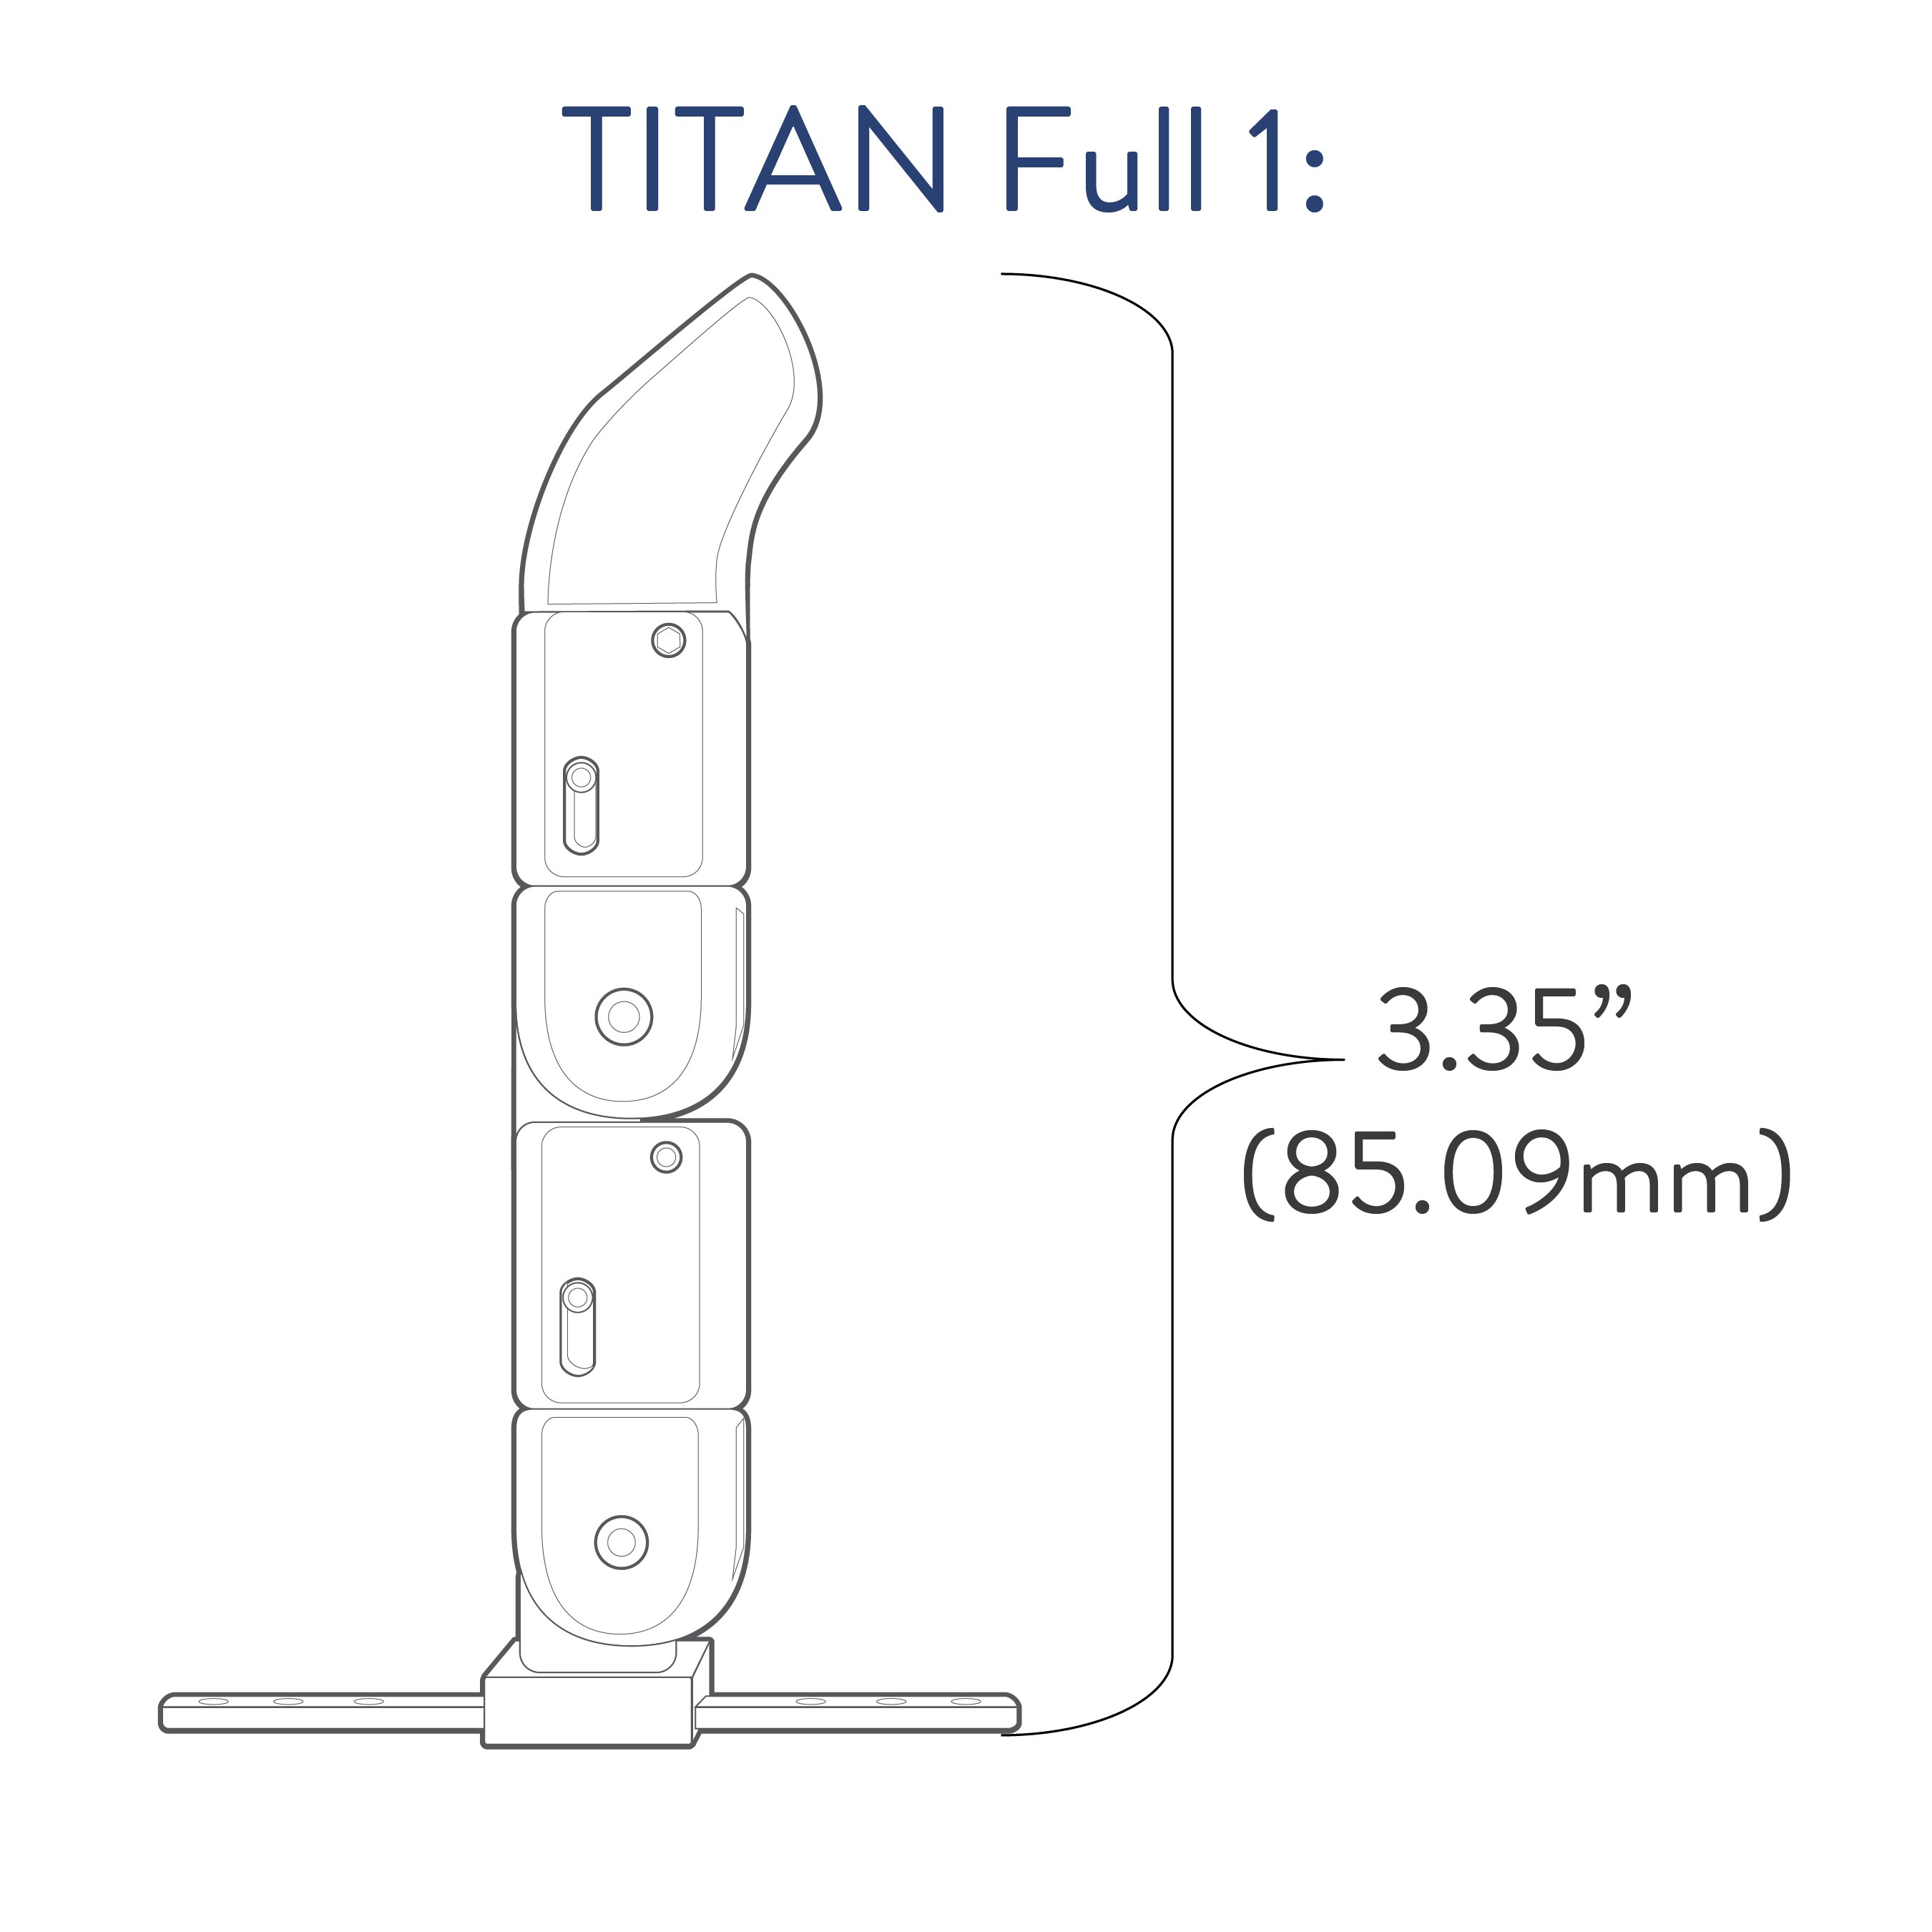 Titan Full Small